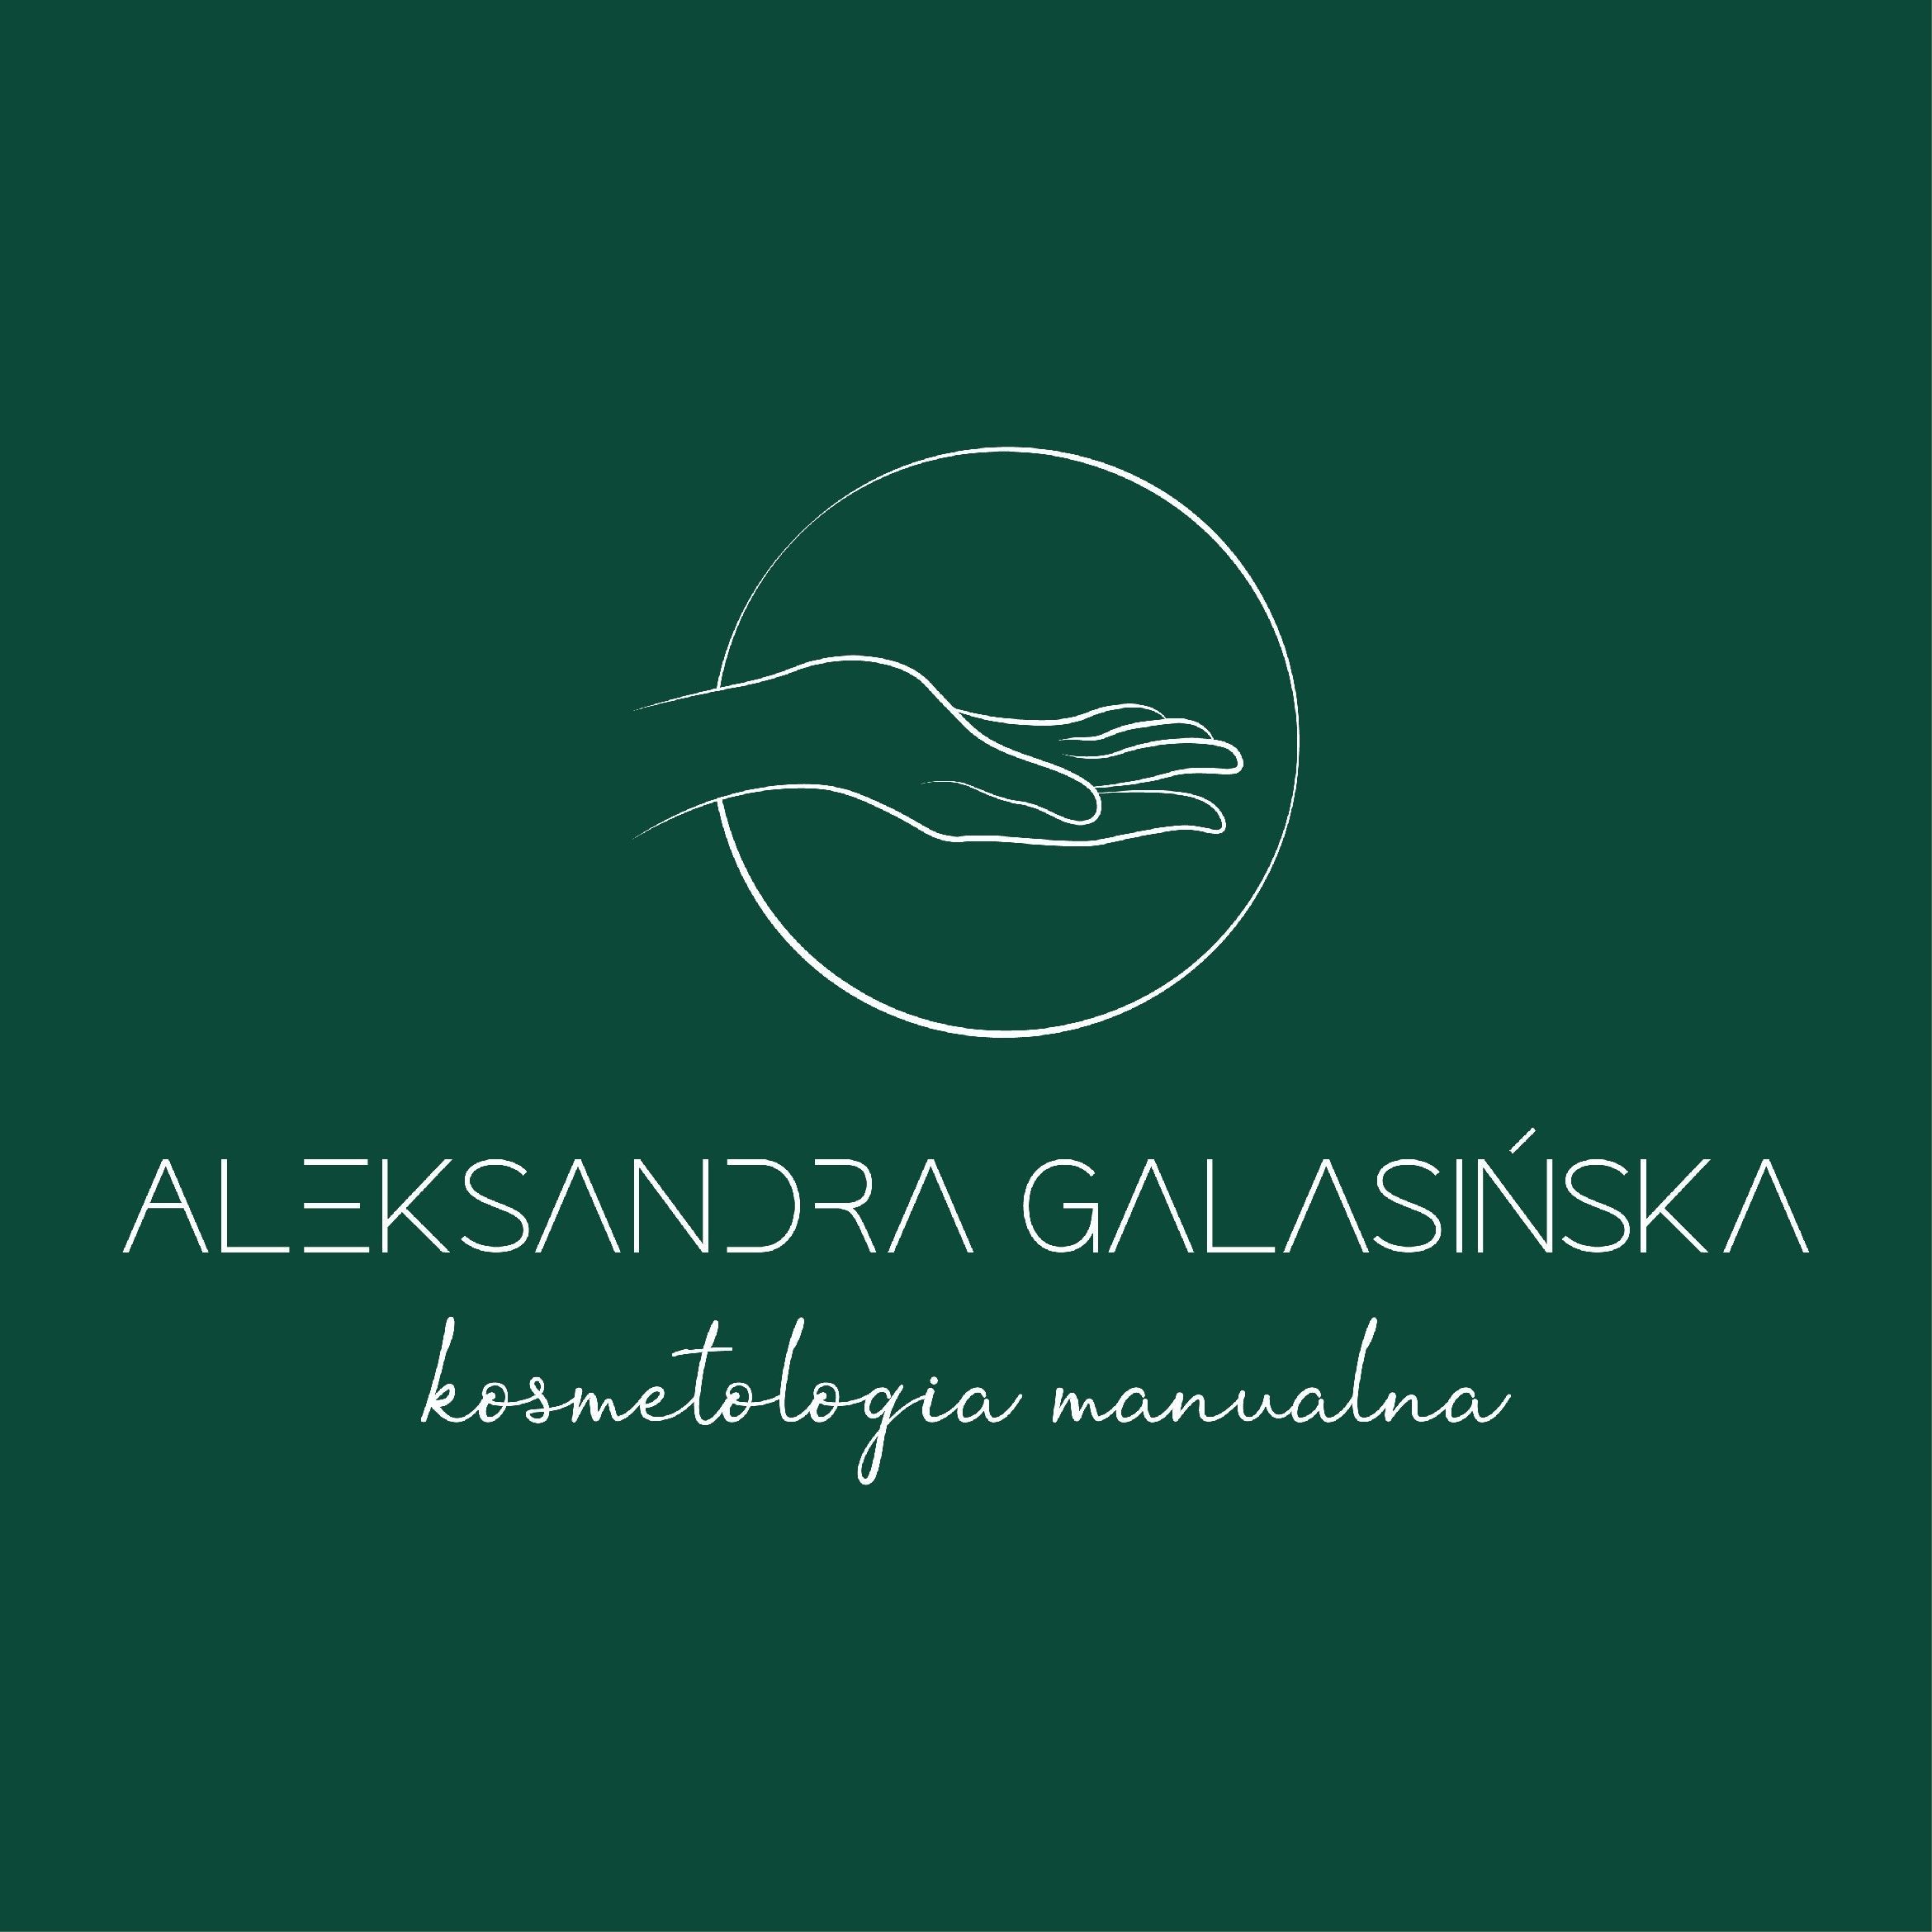 Aleksandra Galasińska Kosmetologia manualna, Studio fryzur la pazur Główna 86a, 54-061, Wrocław, Fabryczna